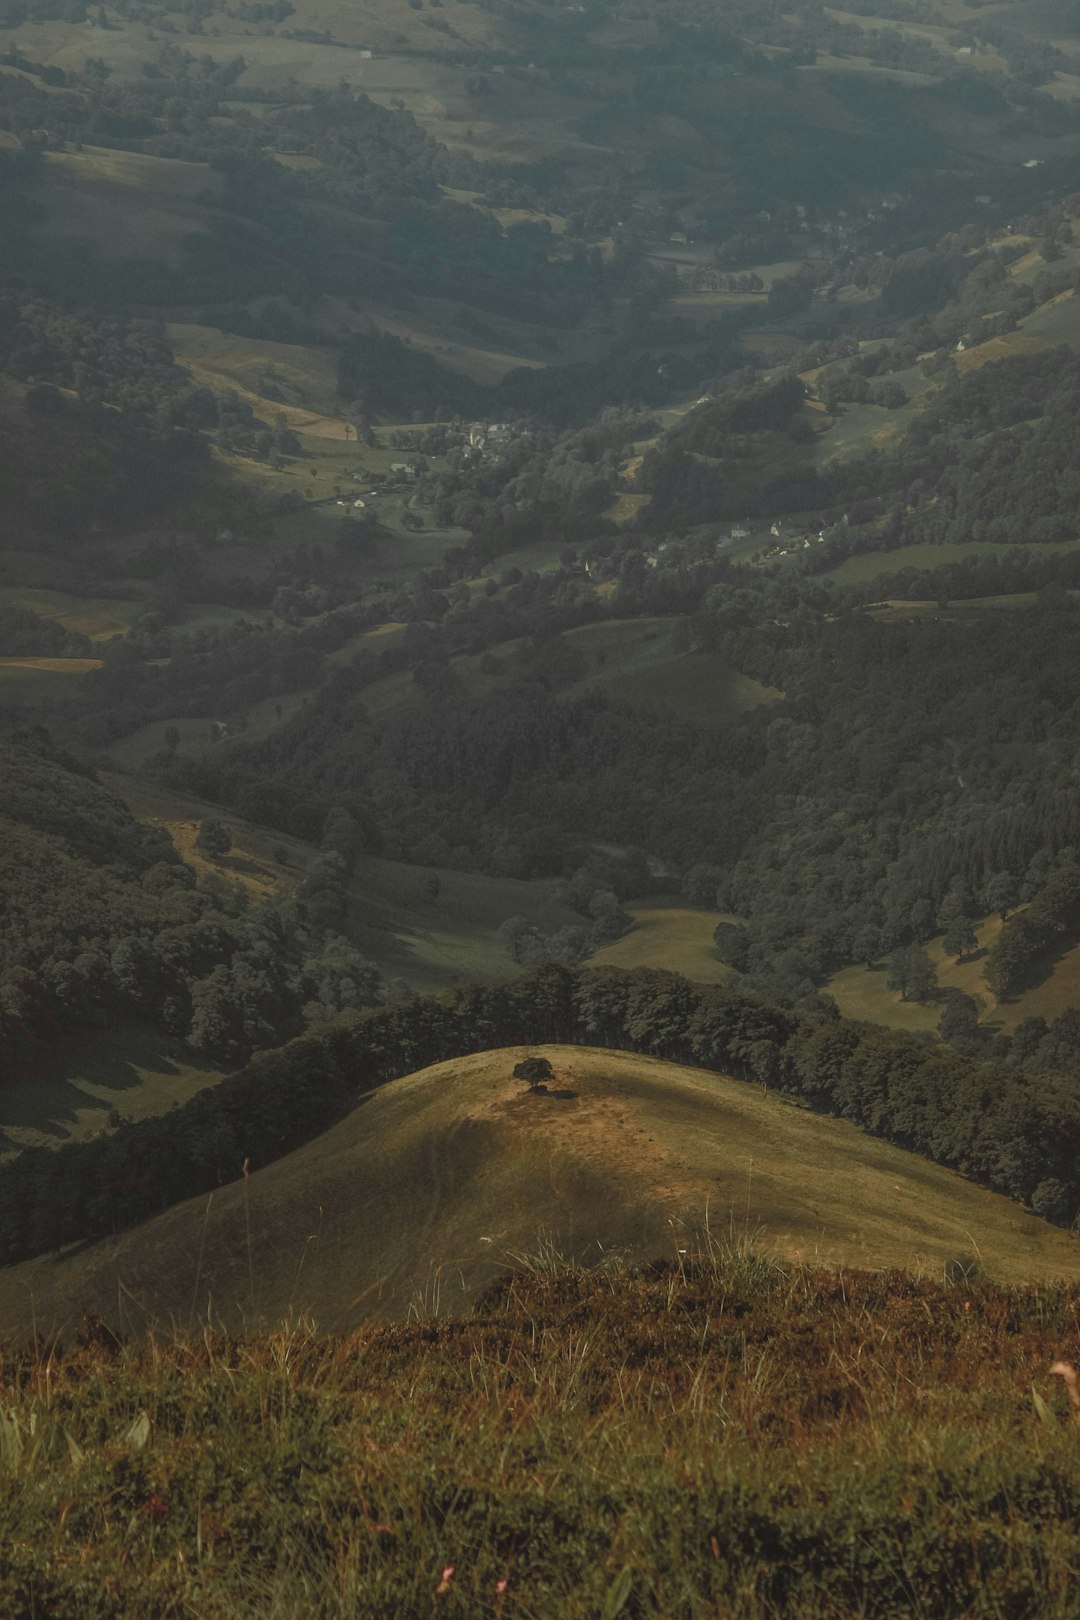 Hill photo spot Parc naturel régional des Volcans d'Auvergne Puy Mary